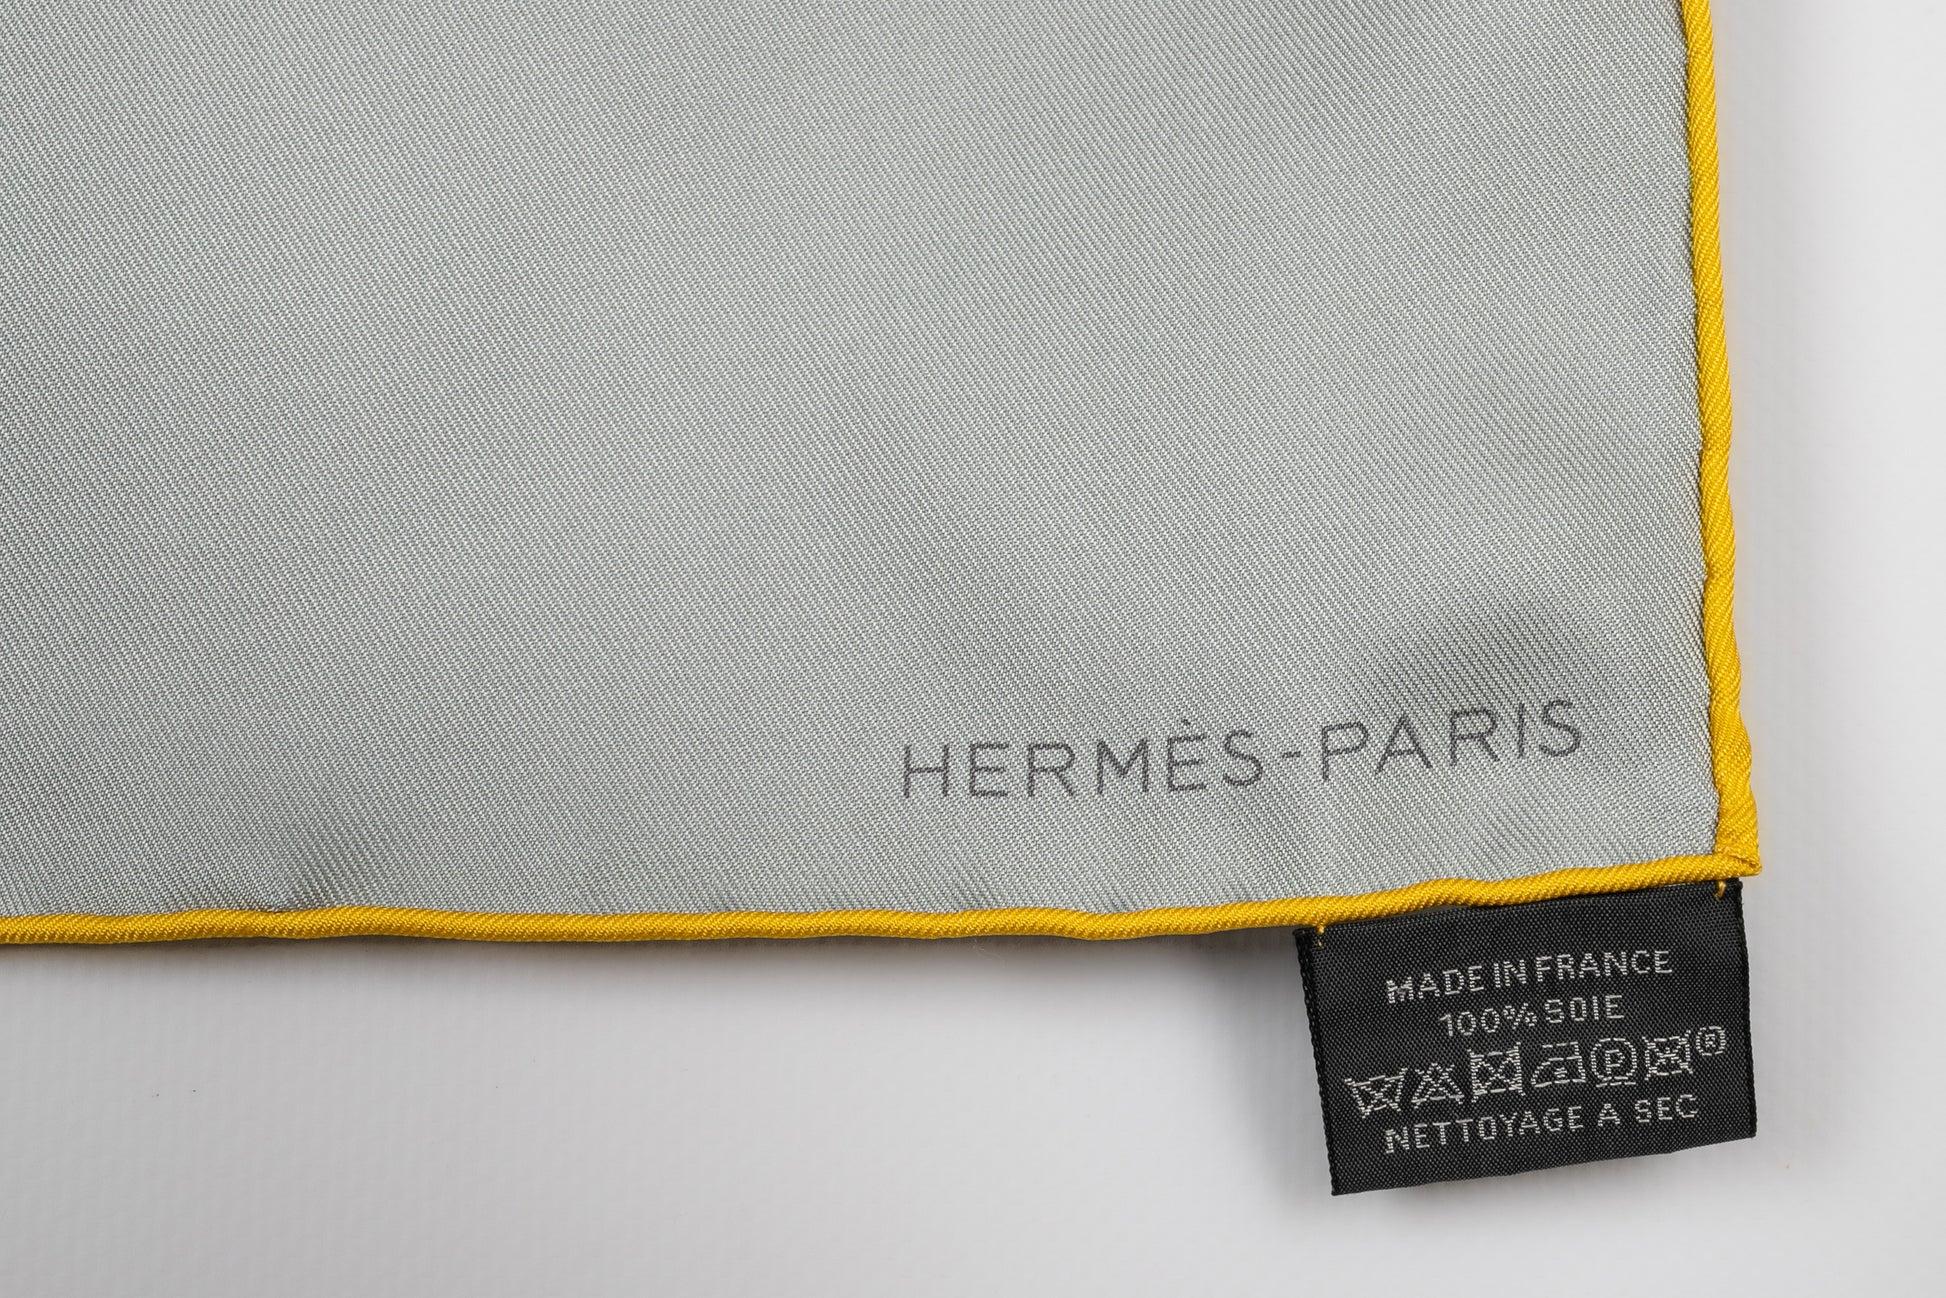 Hermès Foulard 